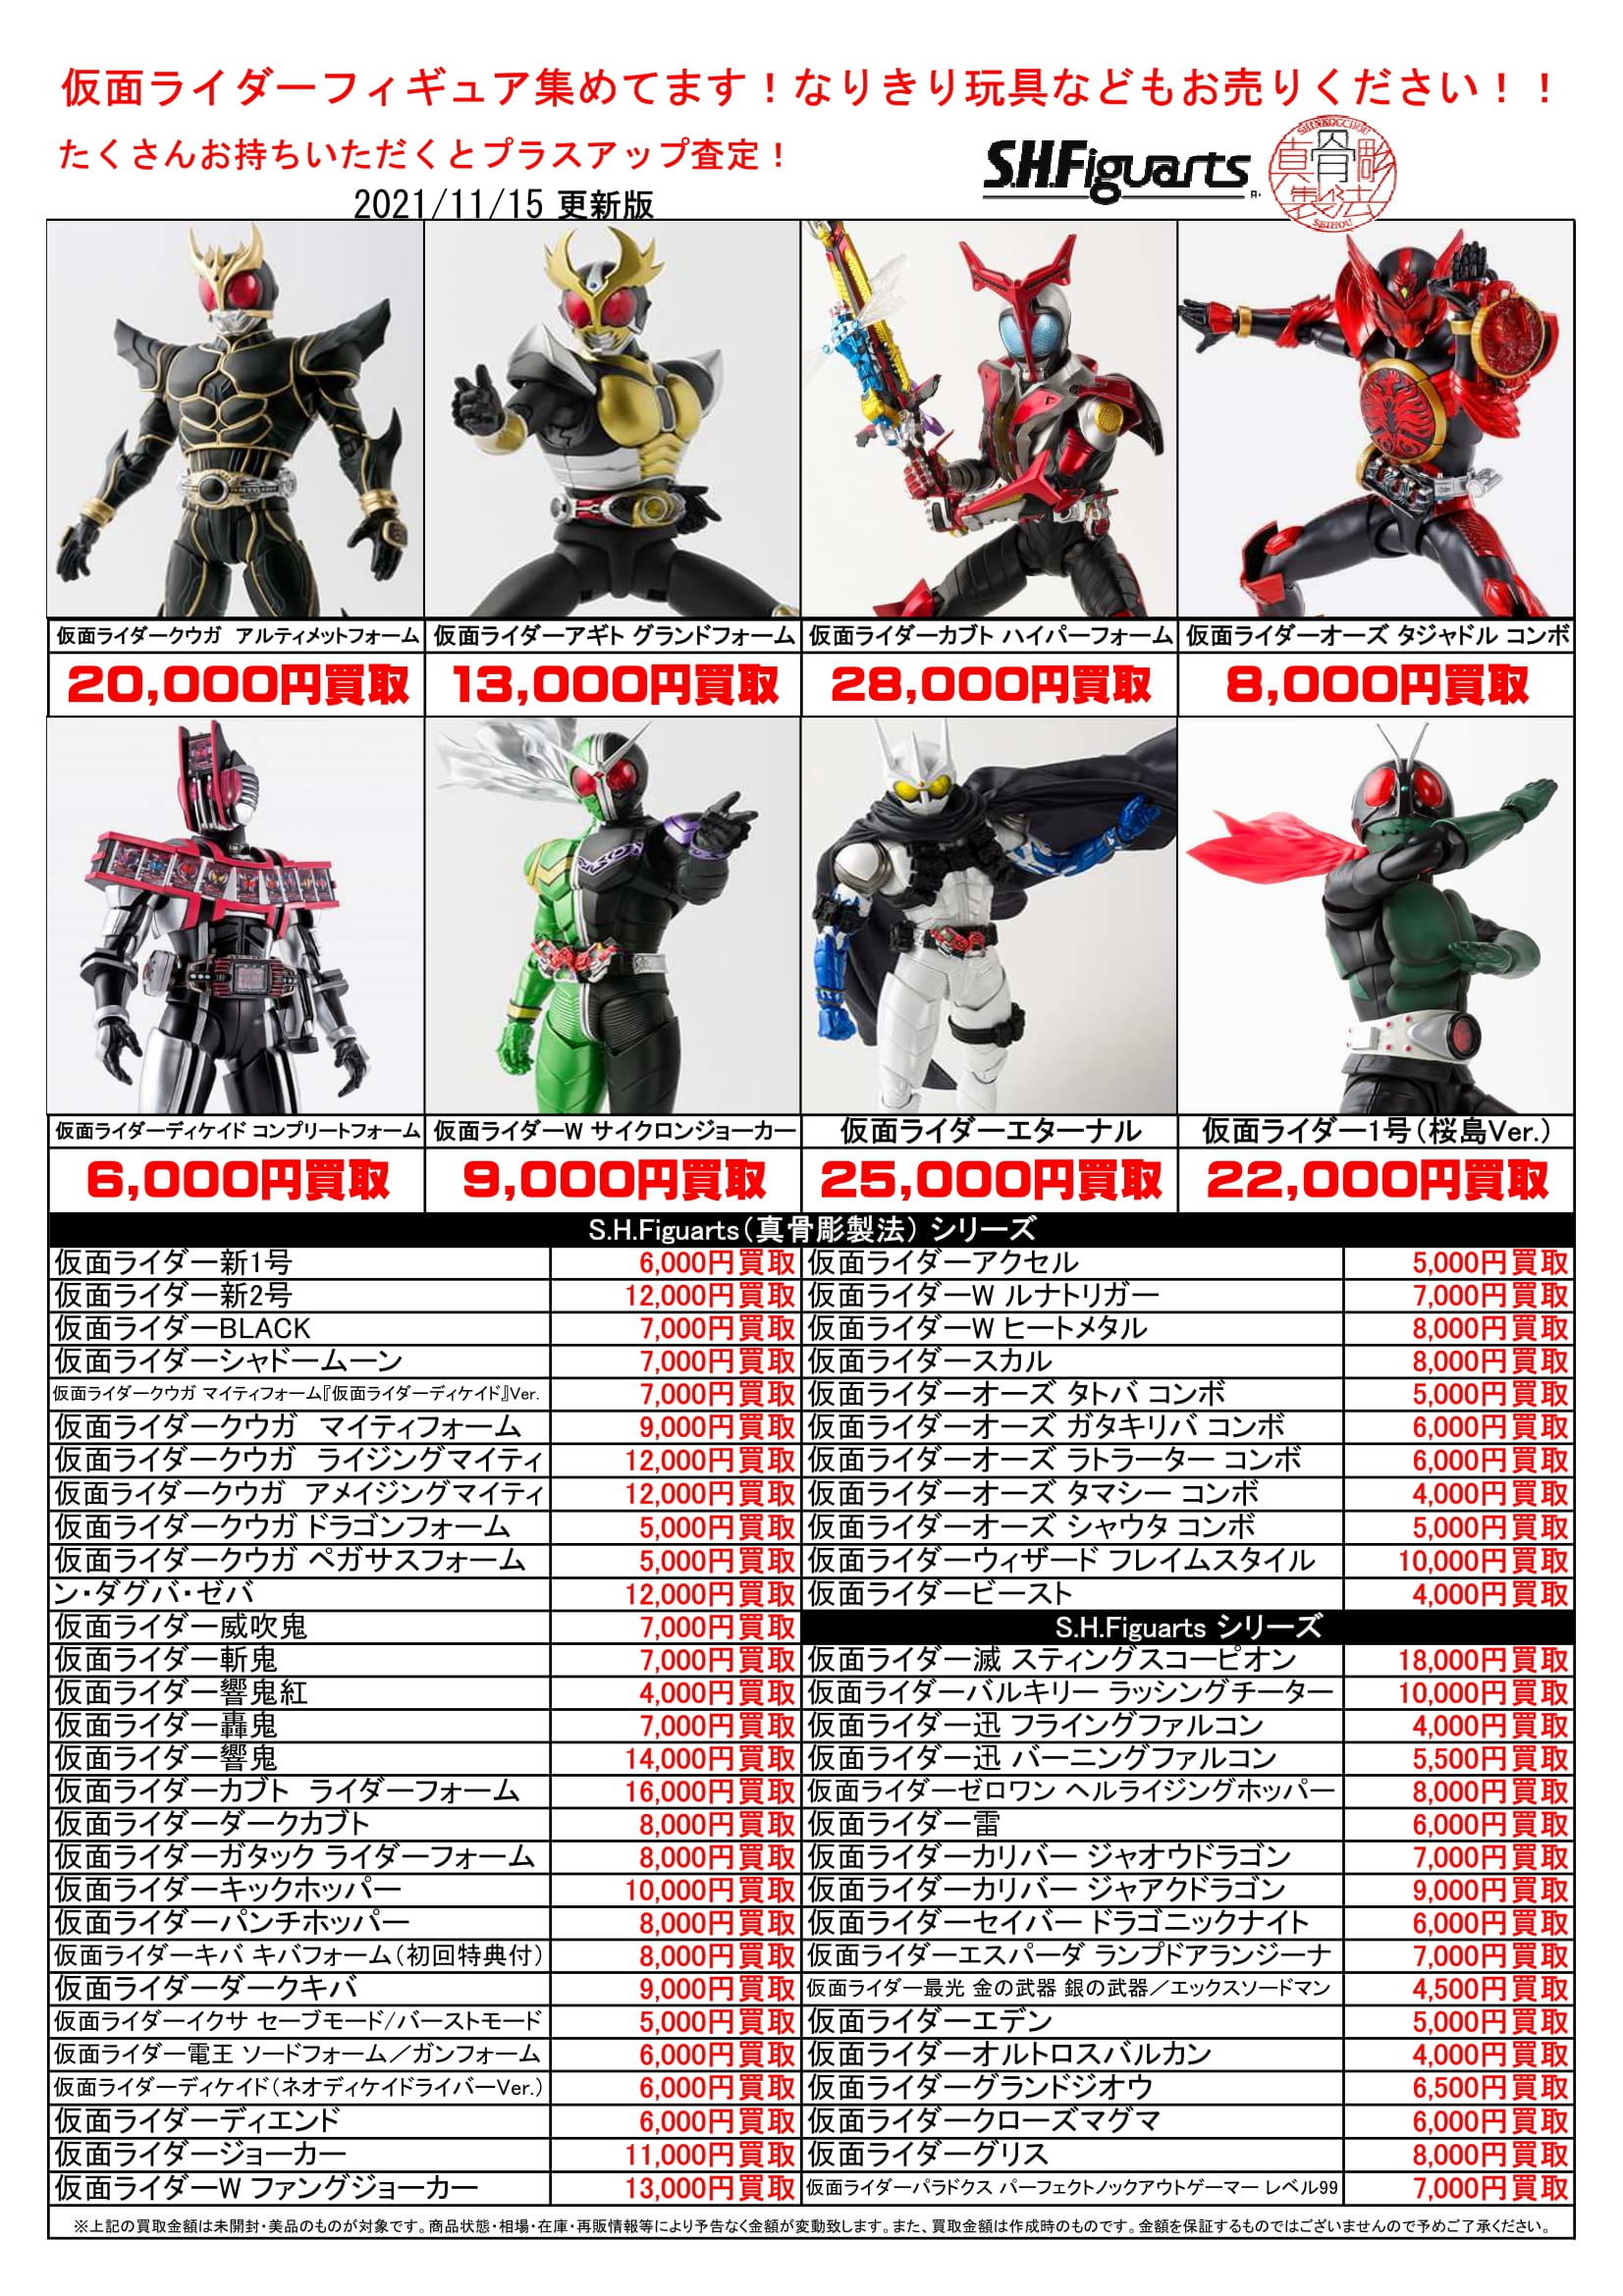 11/16☆仮面ライダーS.H.フィギュアーツの買取価格最新版です